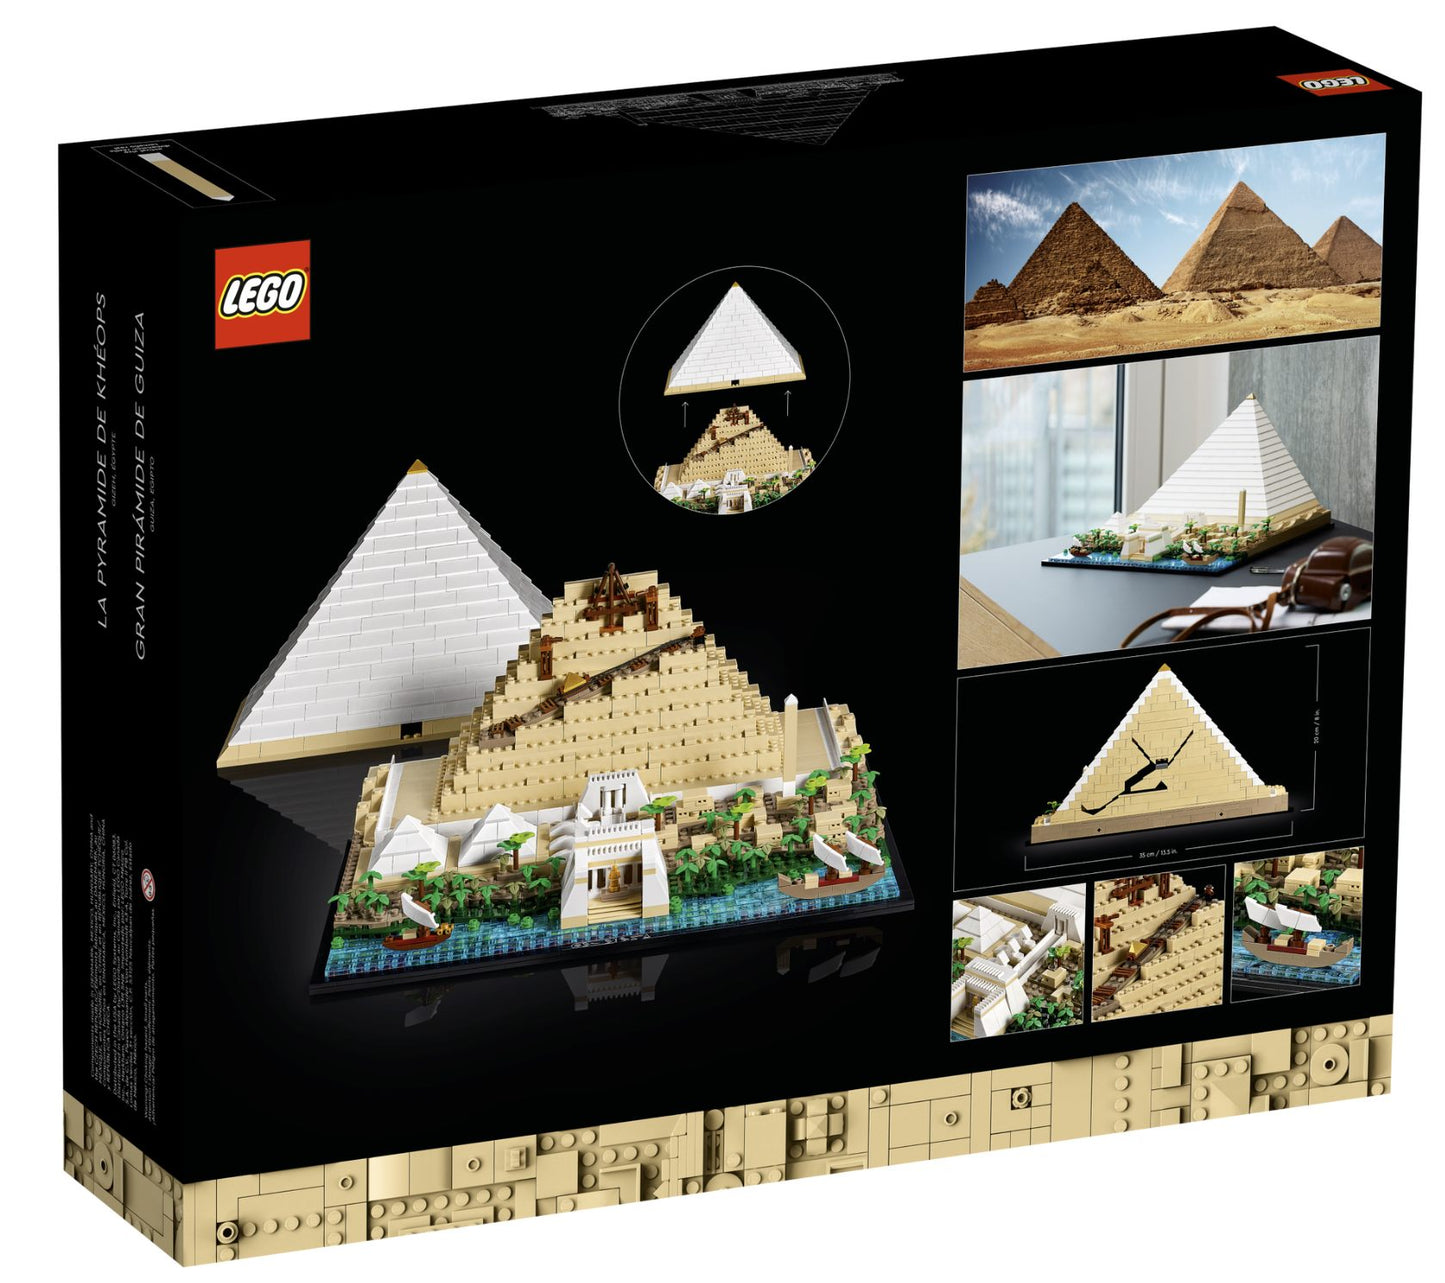 21058 LEGO Architecture - La Grande Piramide di Giza